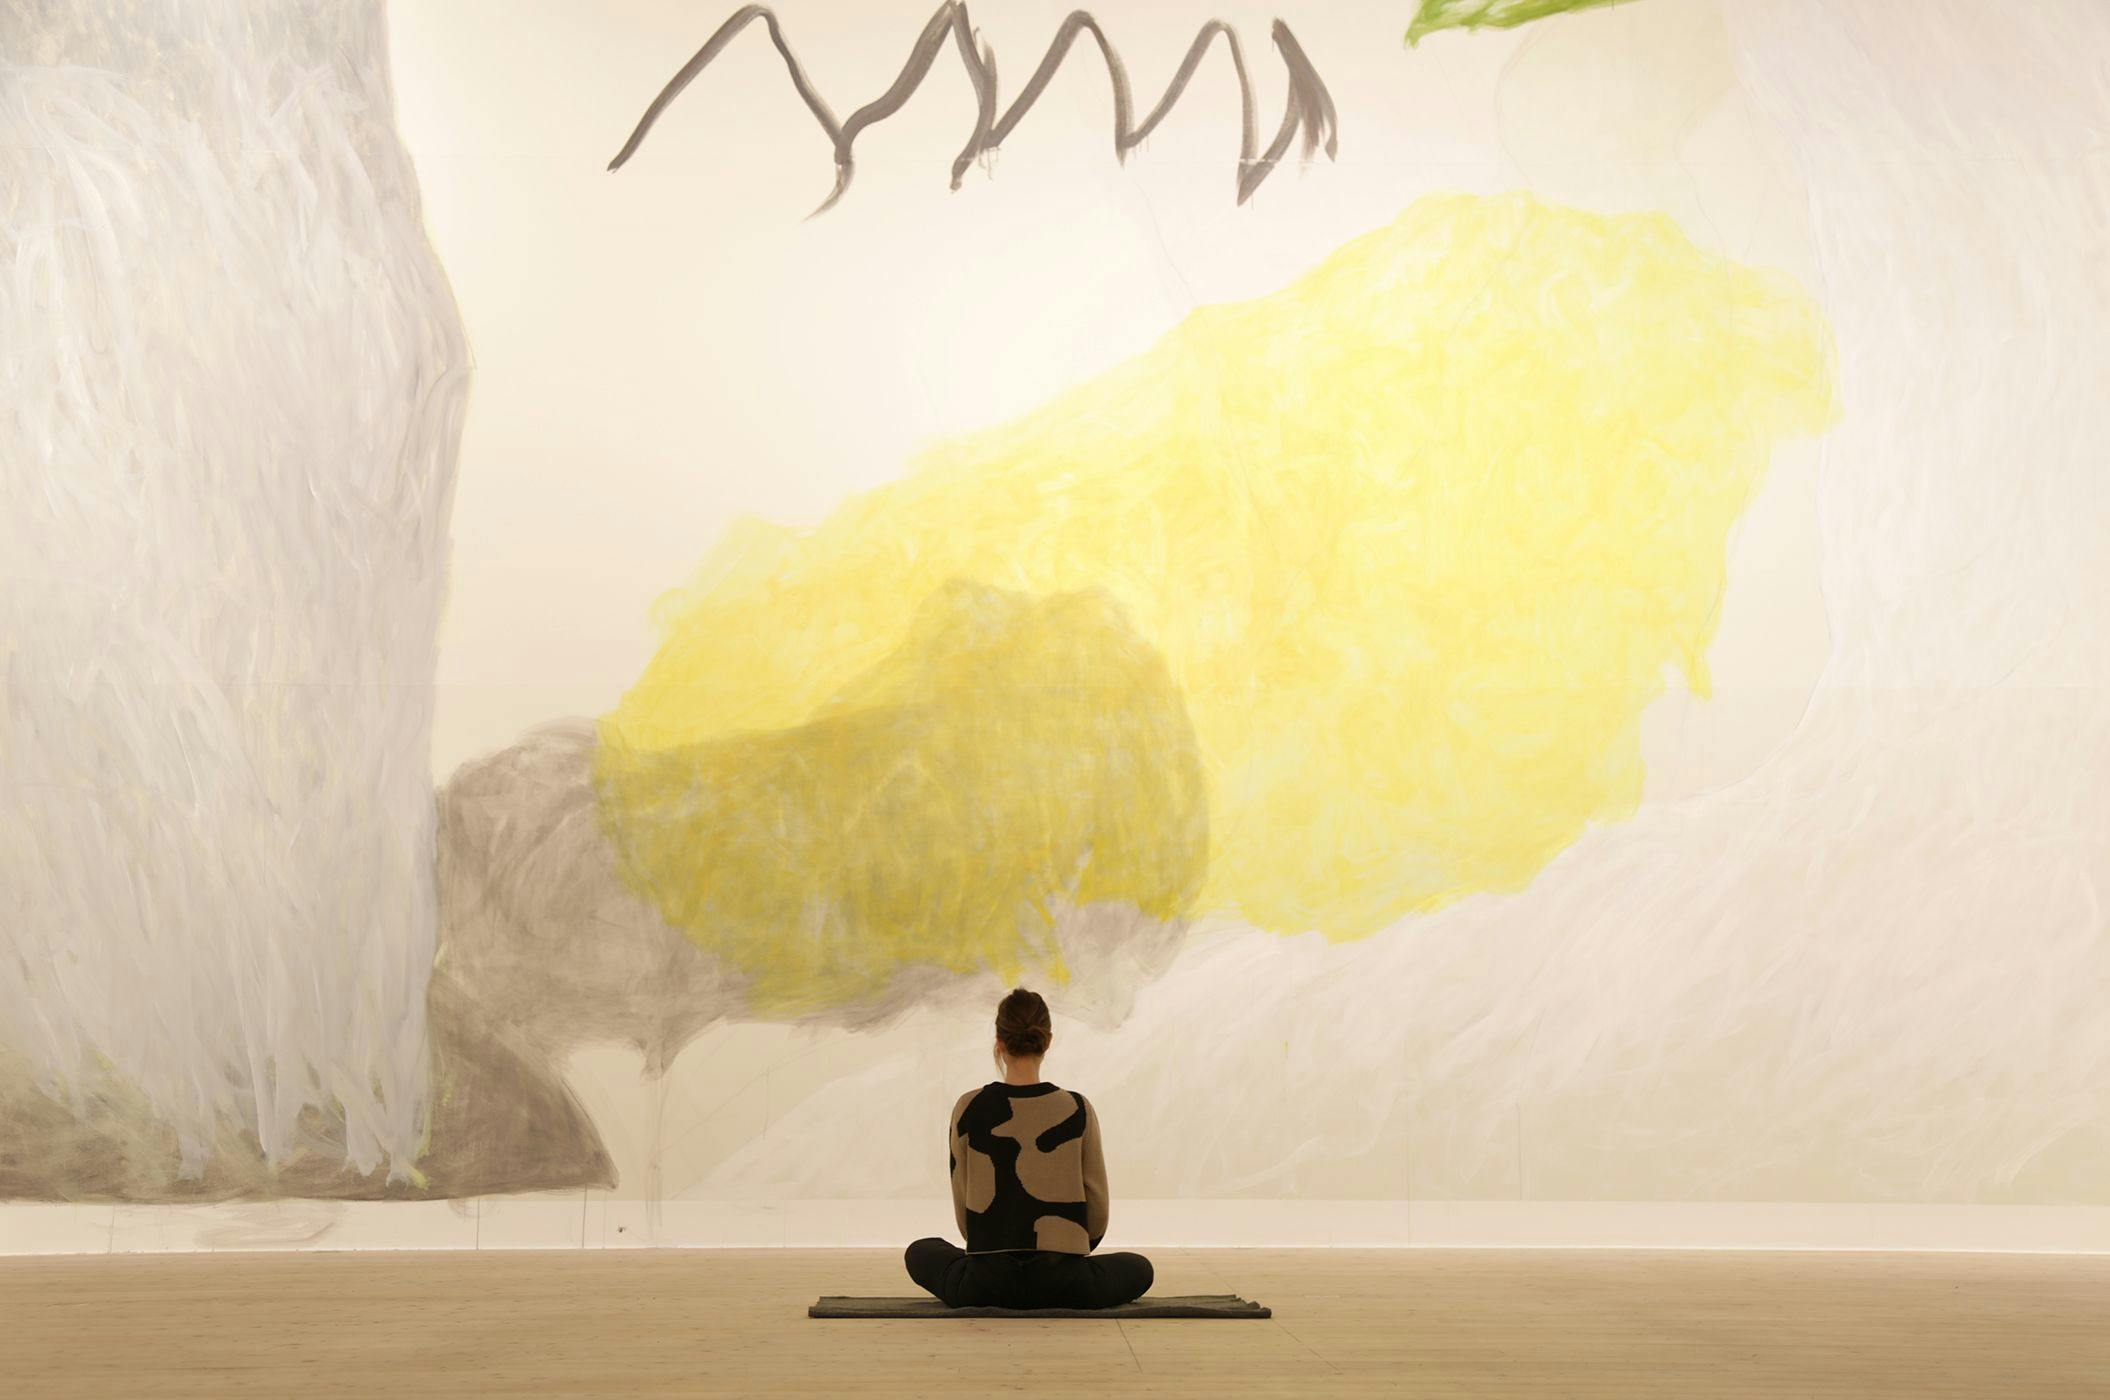 Person sitter med ryggen mot kameran i skräddare på golvet, framför stor väggmålning i gult och grått.